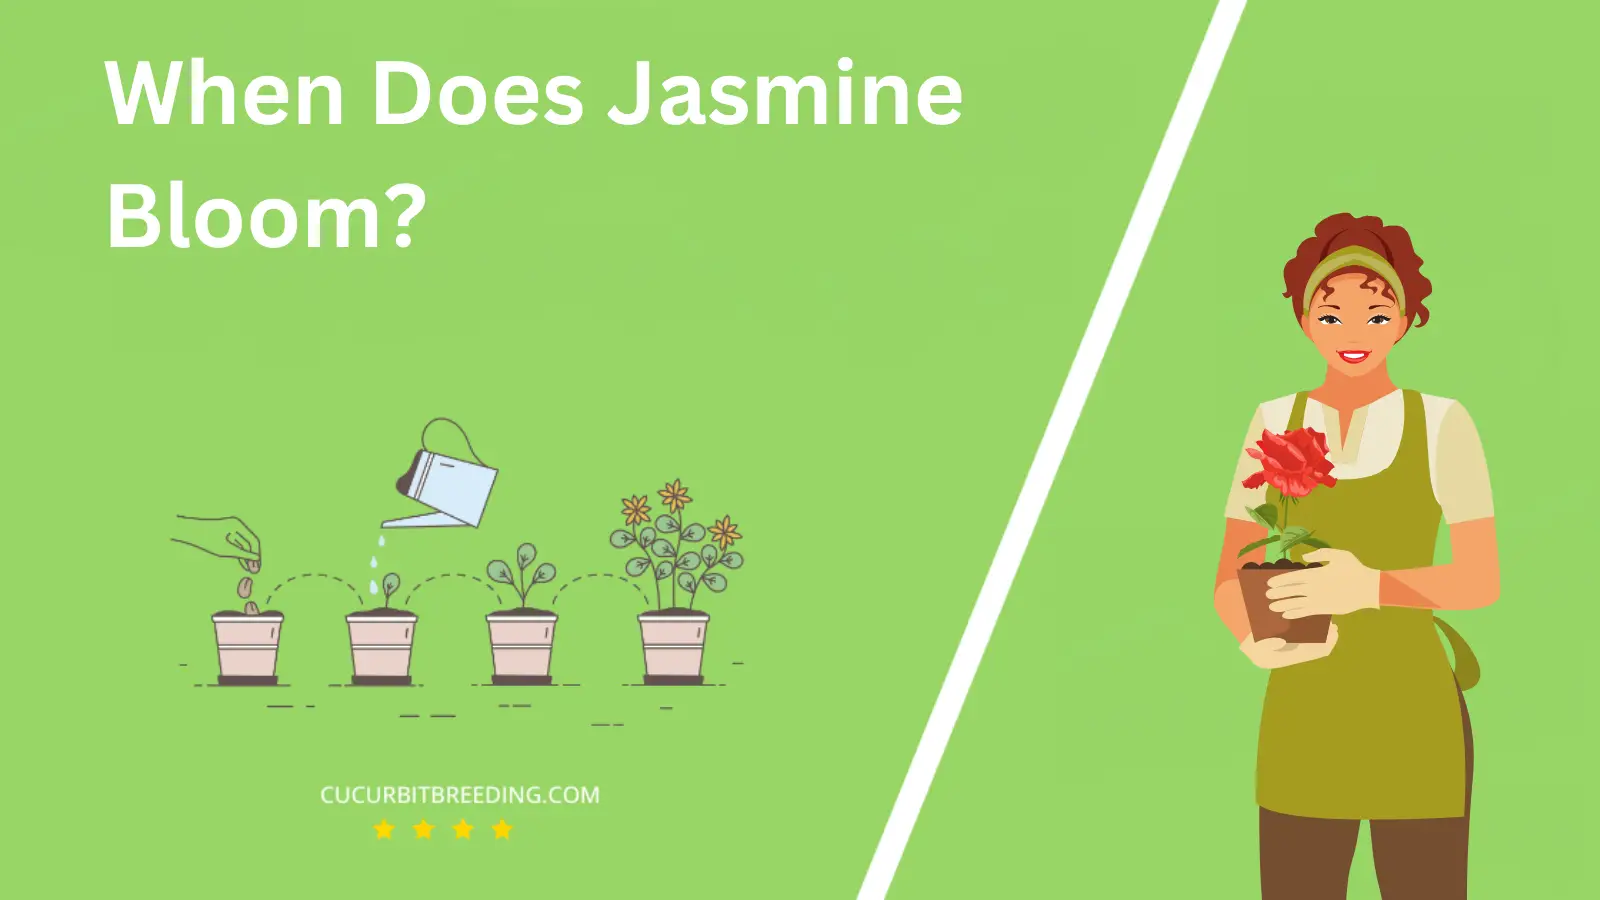 When Does Jasmine Bloom?